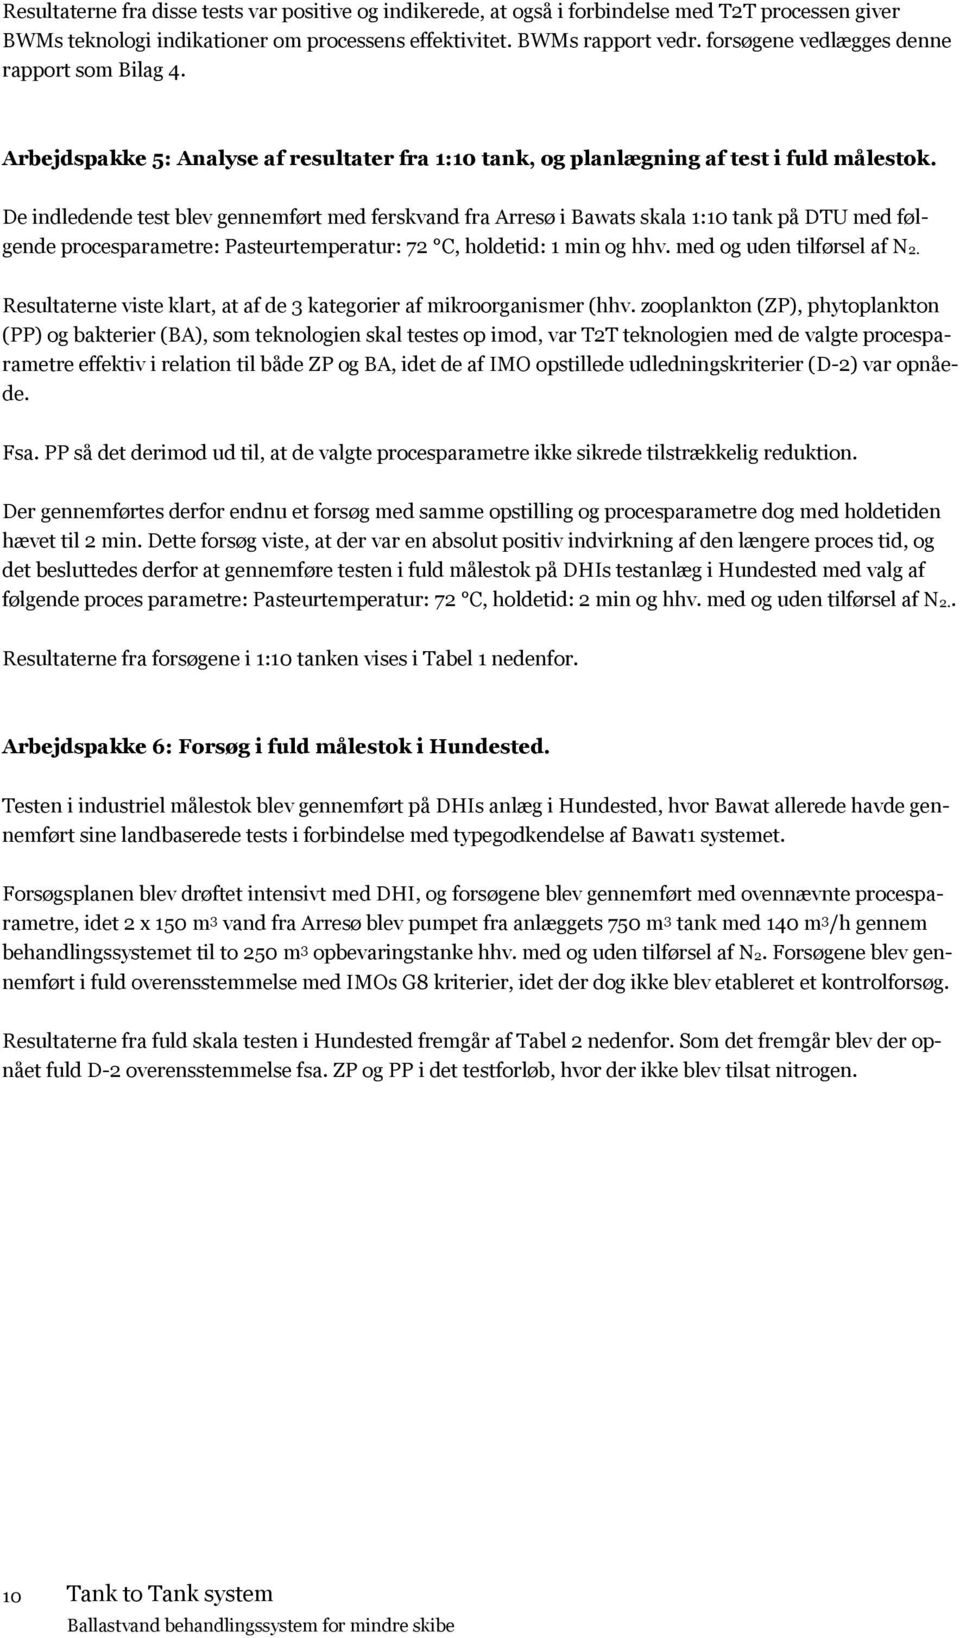 De indledende test blev gennemført med ferskvand fra Arresø i Bawats skala 1:10 tank på DTU med følgende procesparametre: Pasteurtemperatur: 72 C, holdetid: 1 min og hhv. med og uden tilførsel af N2.